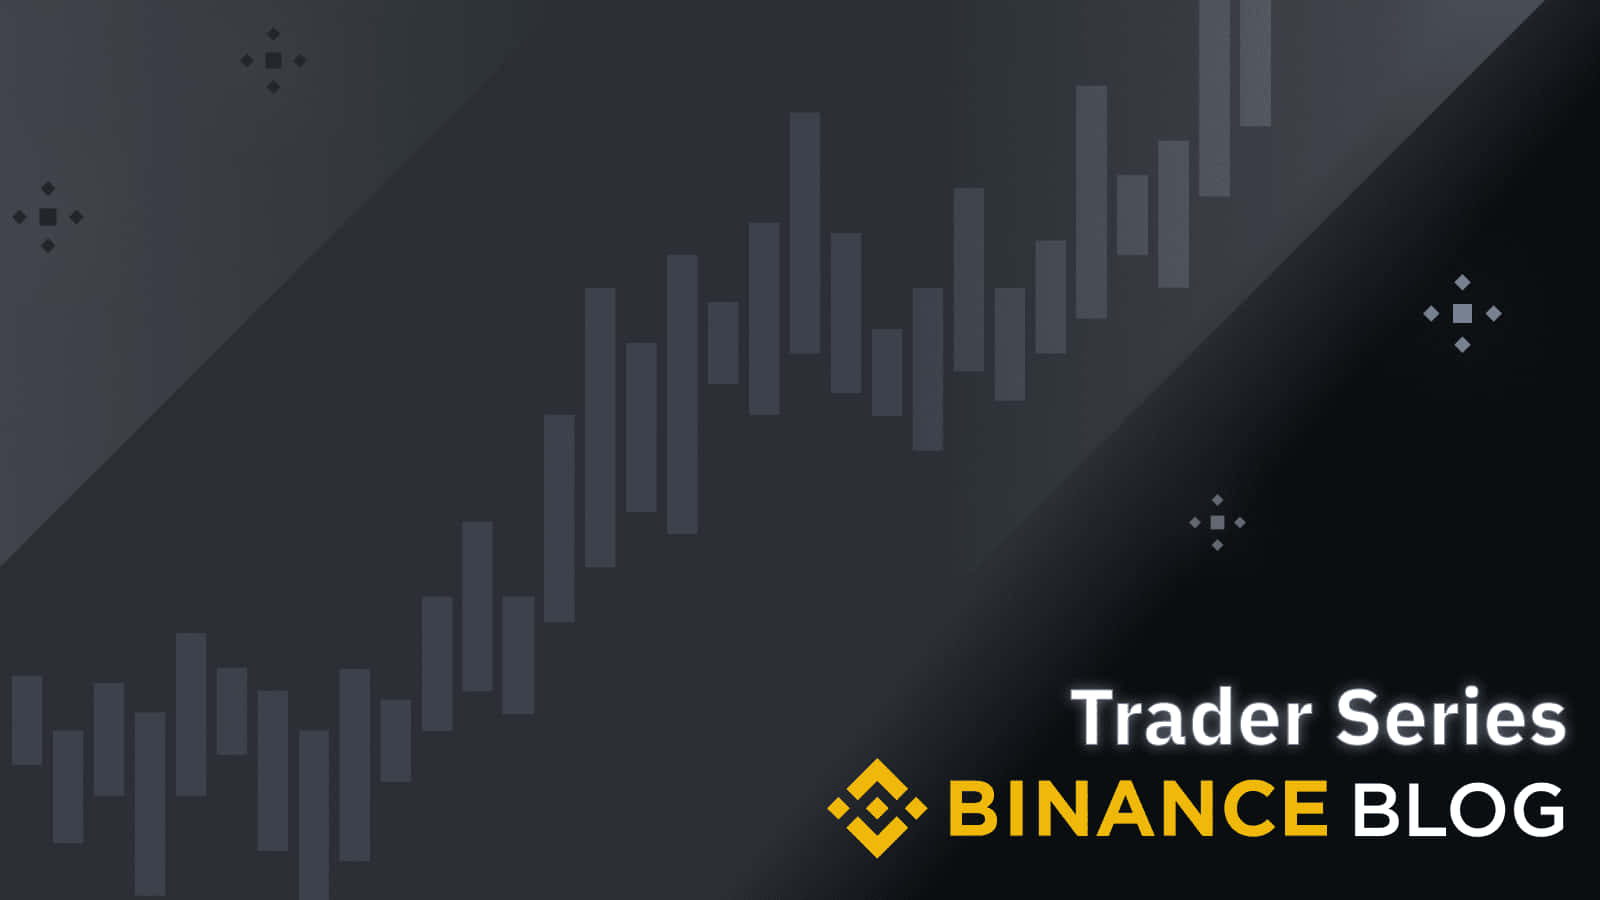 Goditile Migliori Esperienze Di Crypto-trading Su Binance.